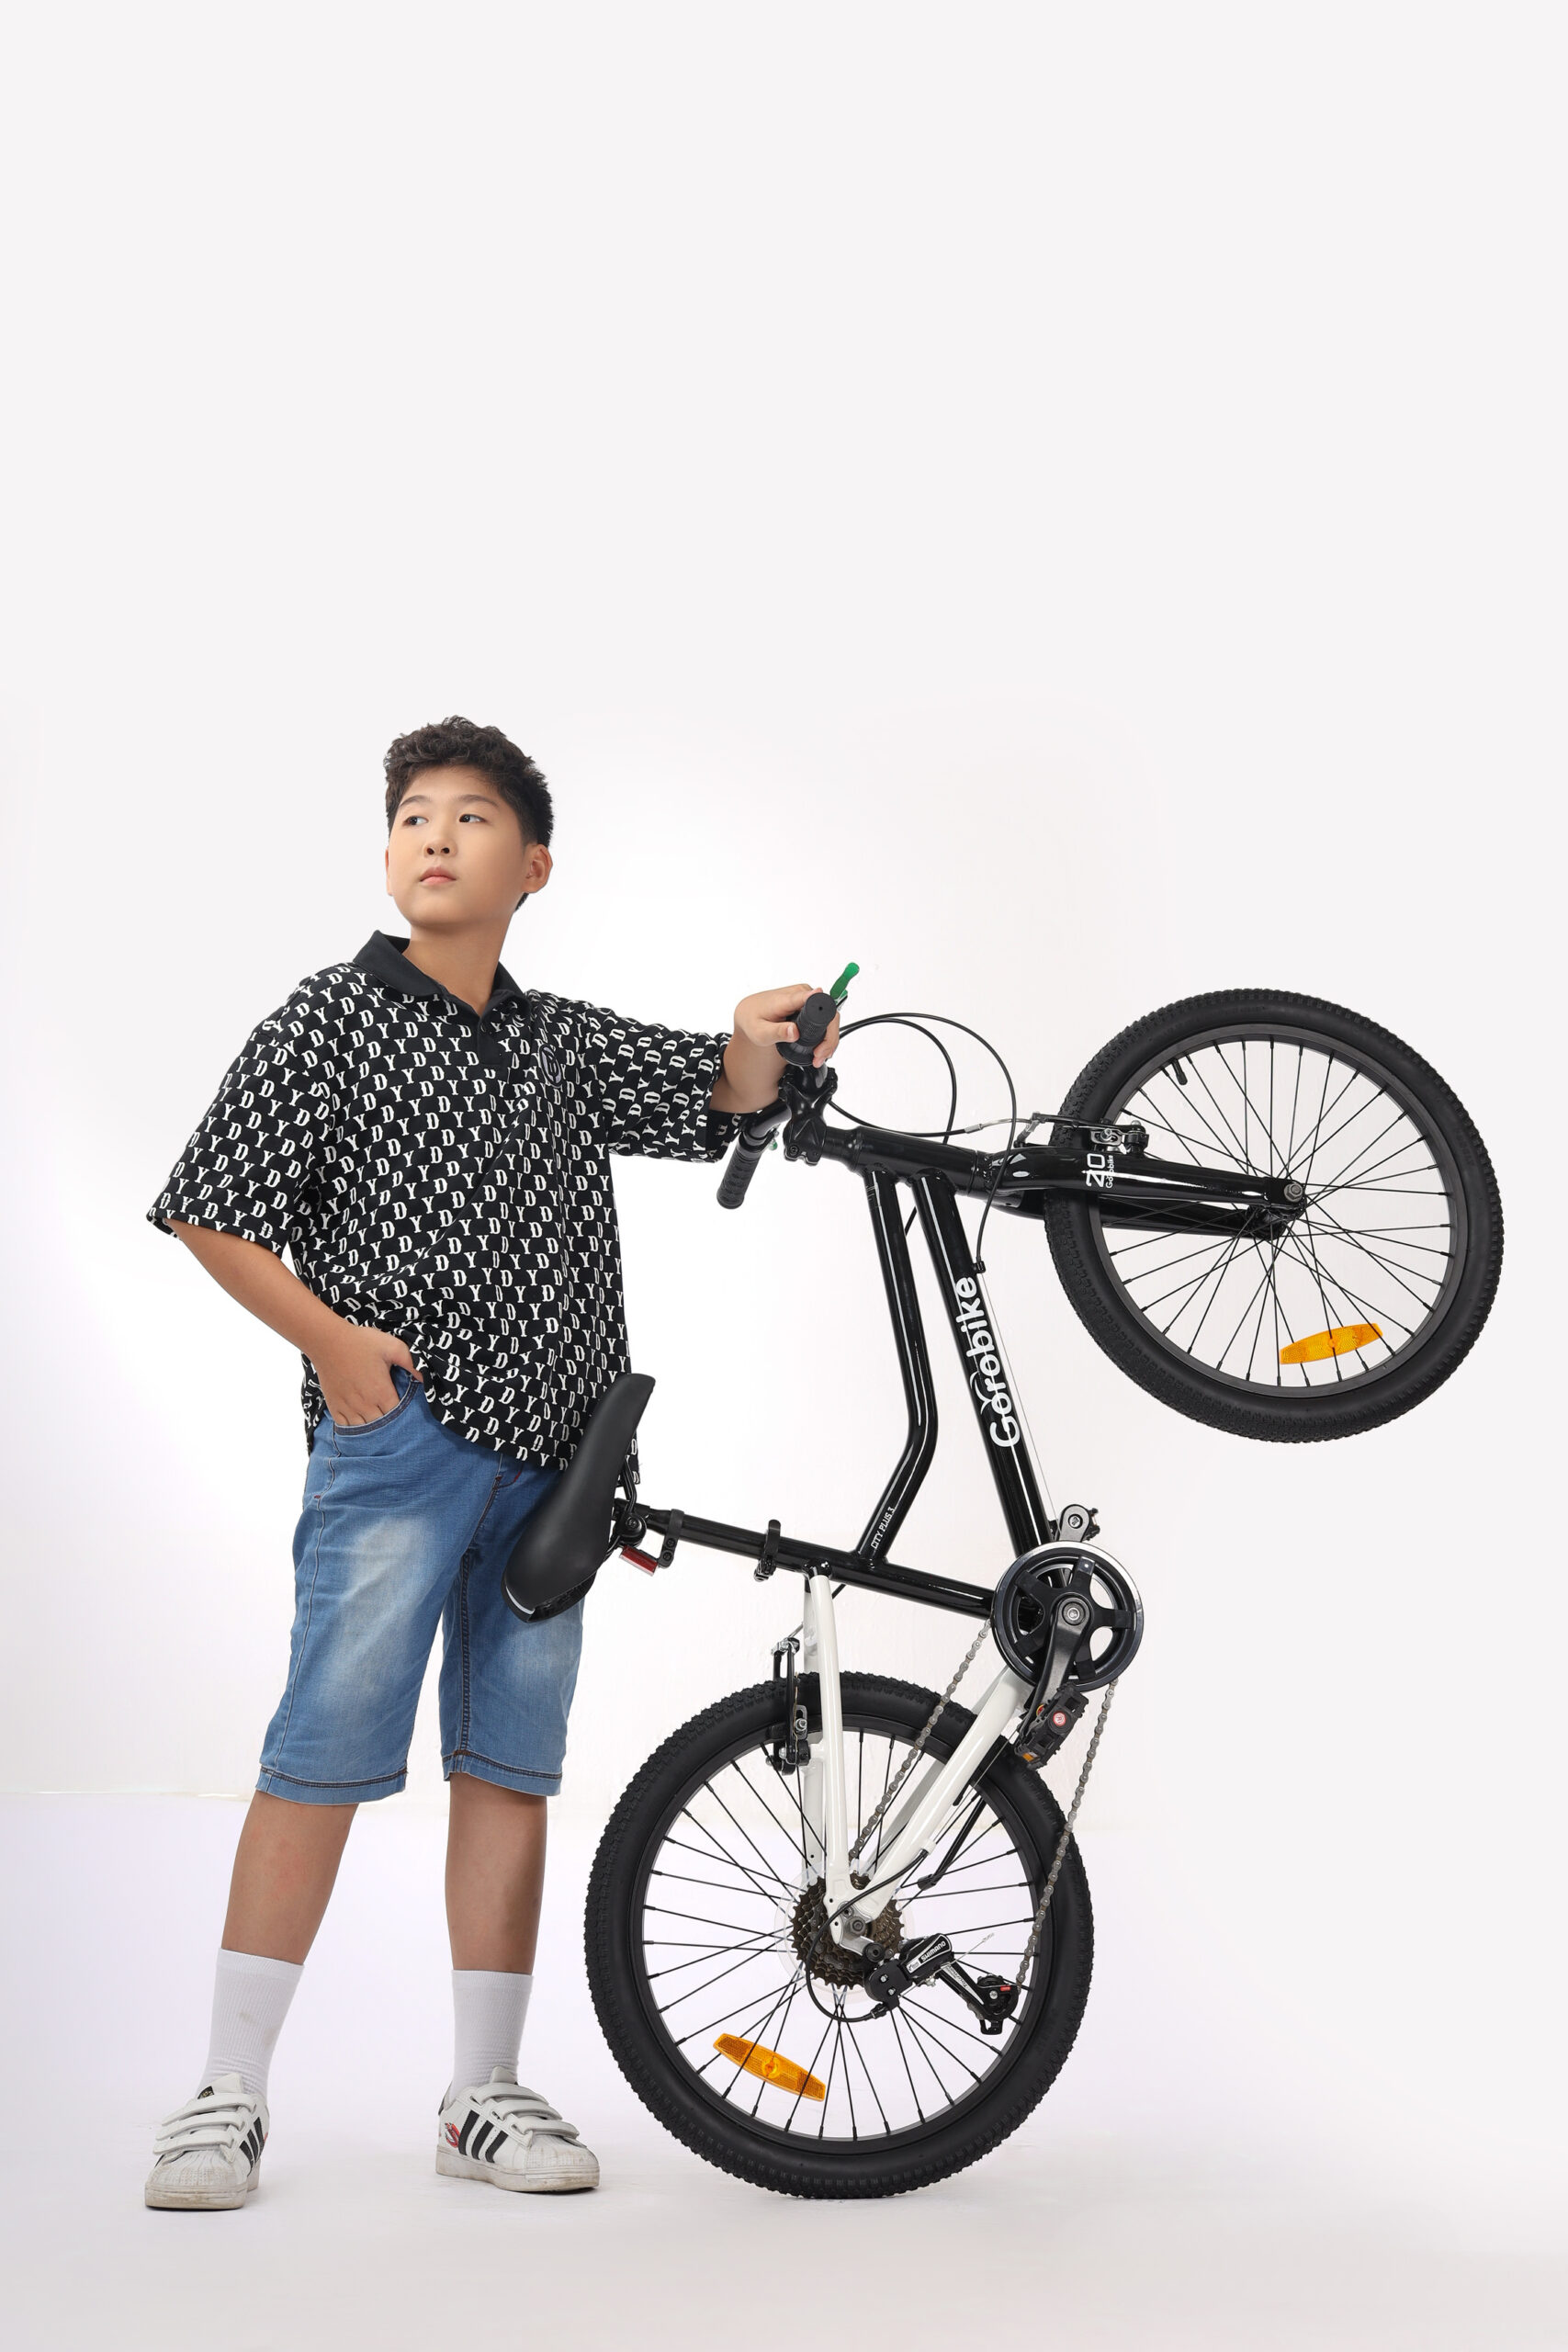 Cách chọn size xe đạp phù hợp với chiều cao như thế nào?